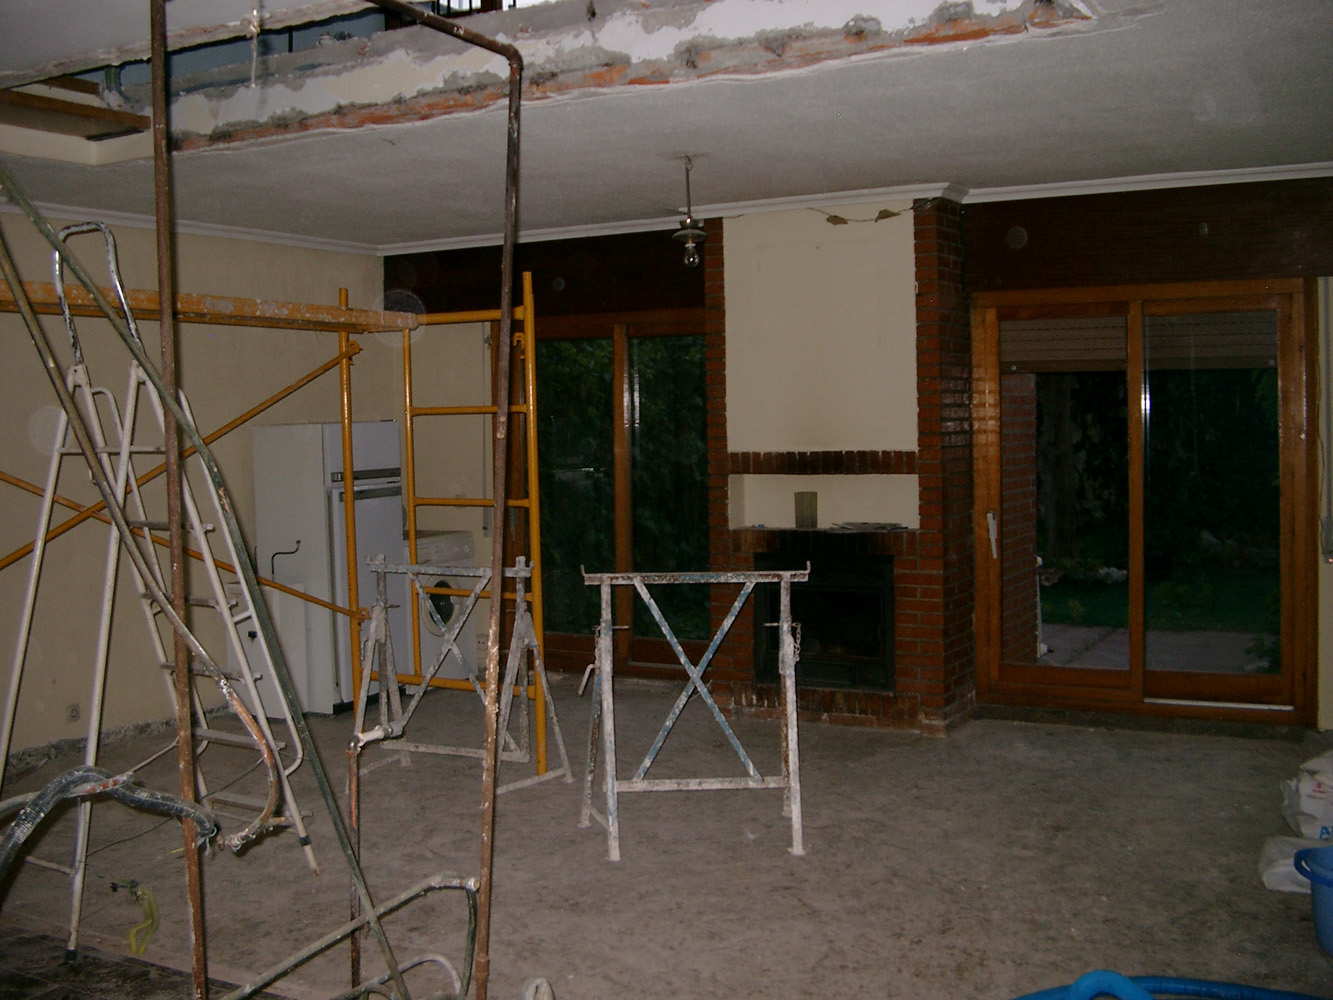 Espacio del salón tras la demolición de la tabiquería previo a la reforma,cubrición del tendedero y cierre del paso entre garaje y vivienda